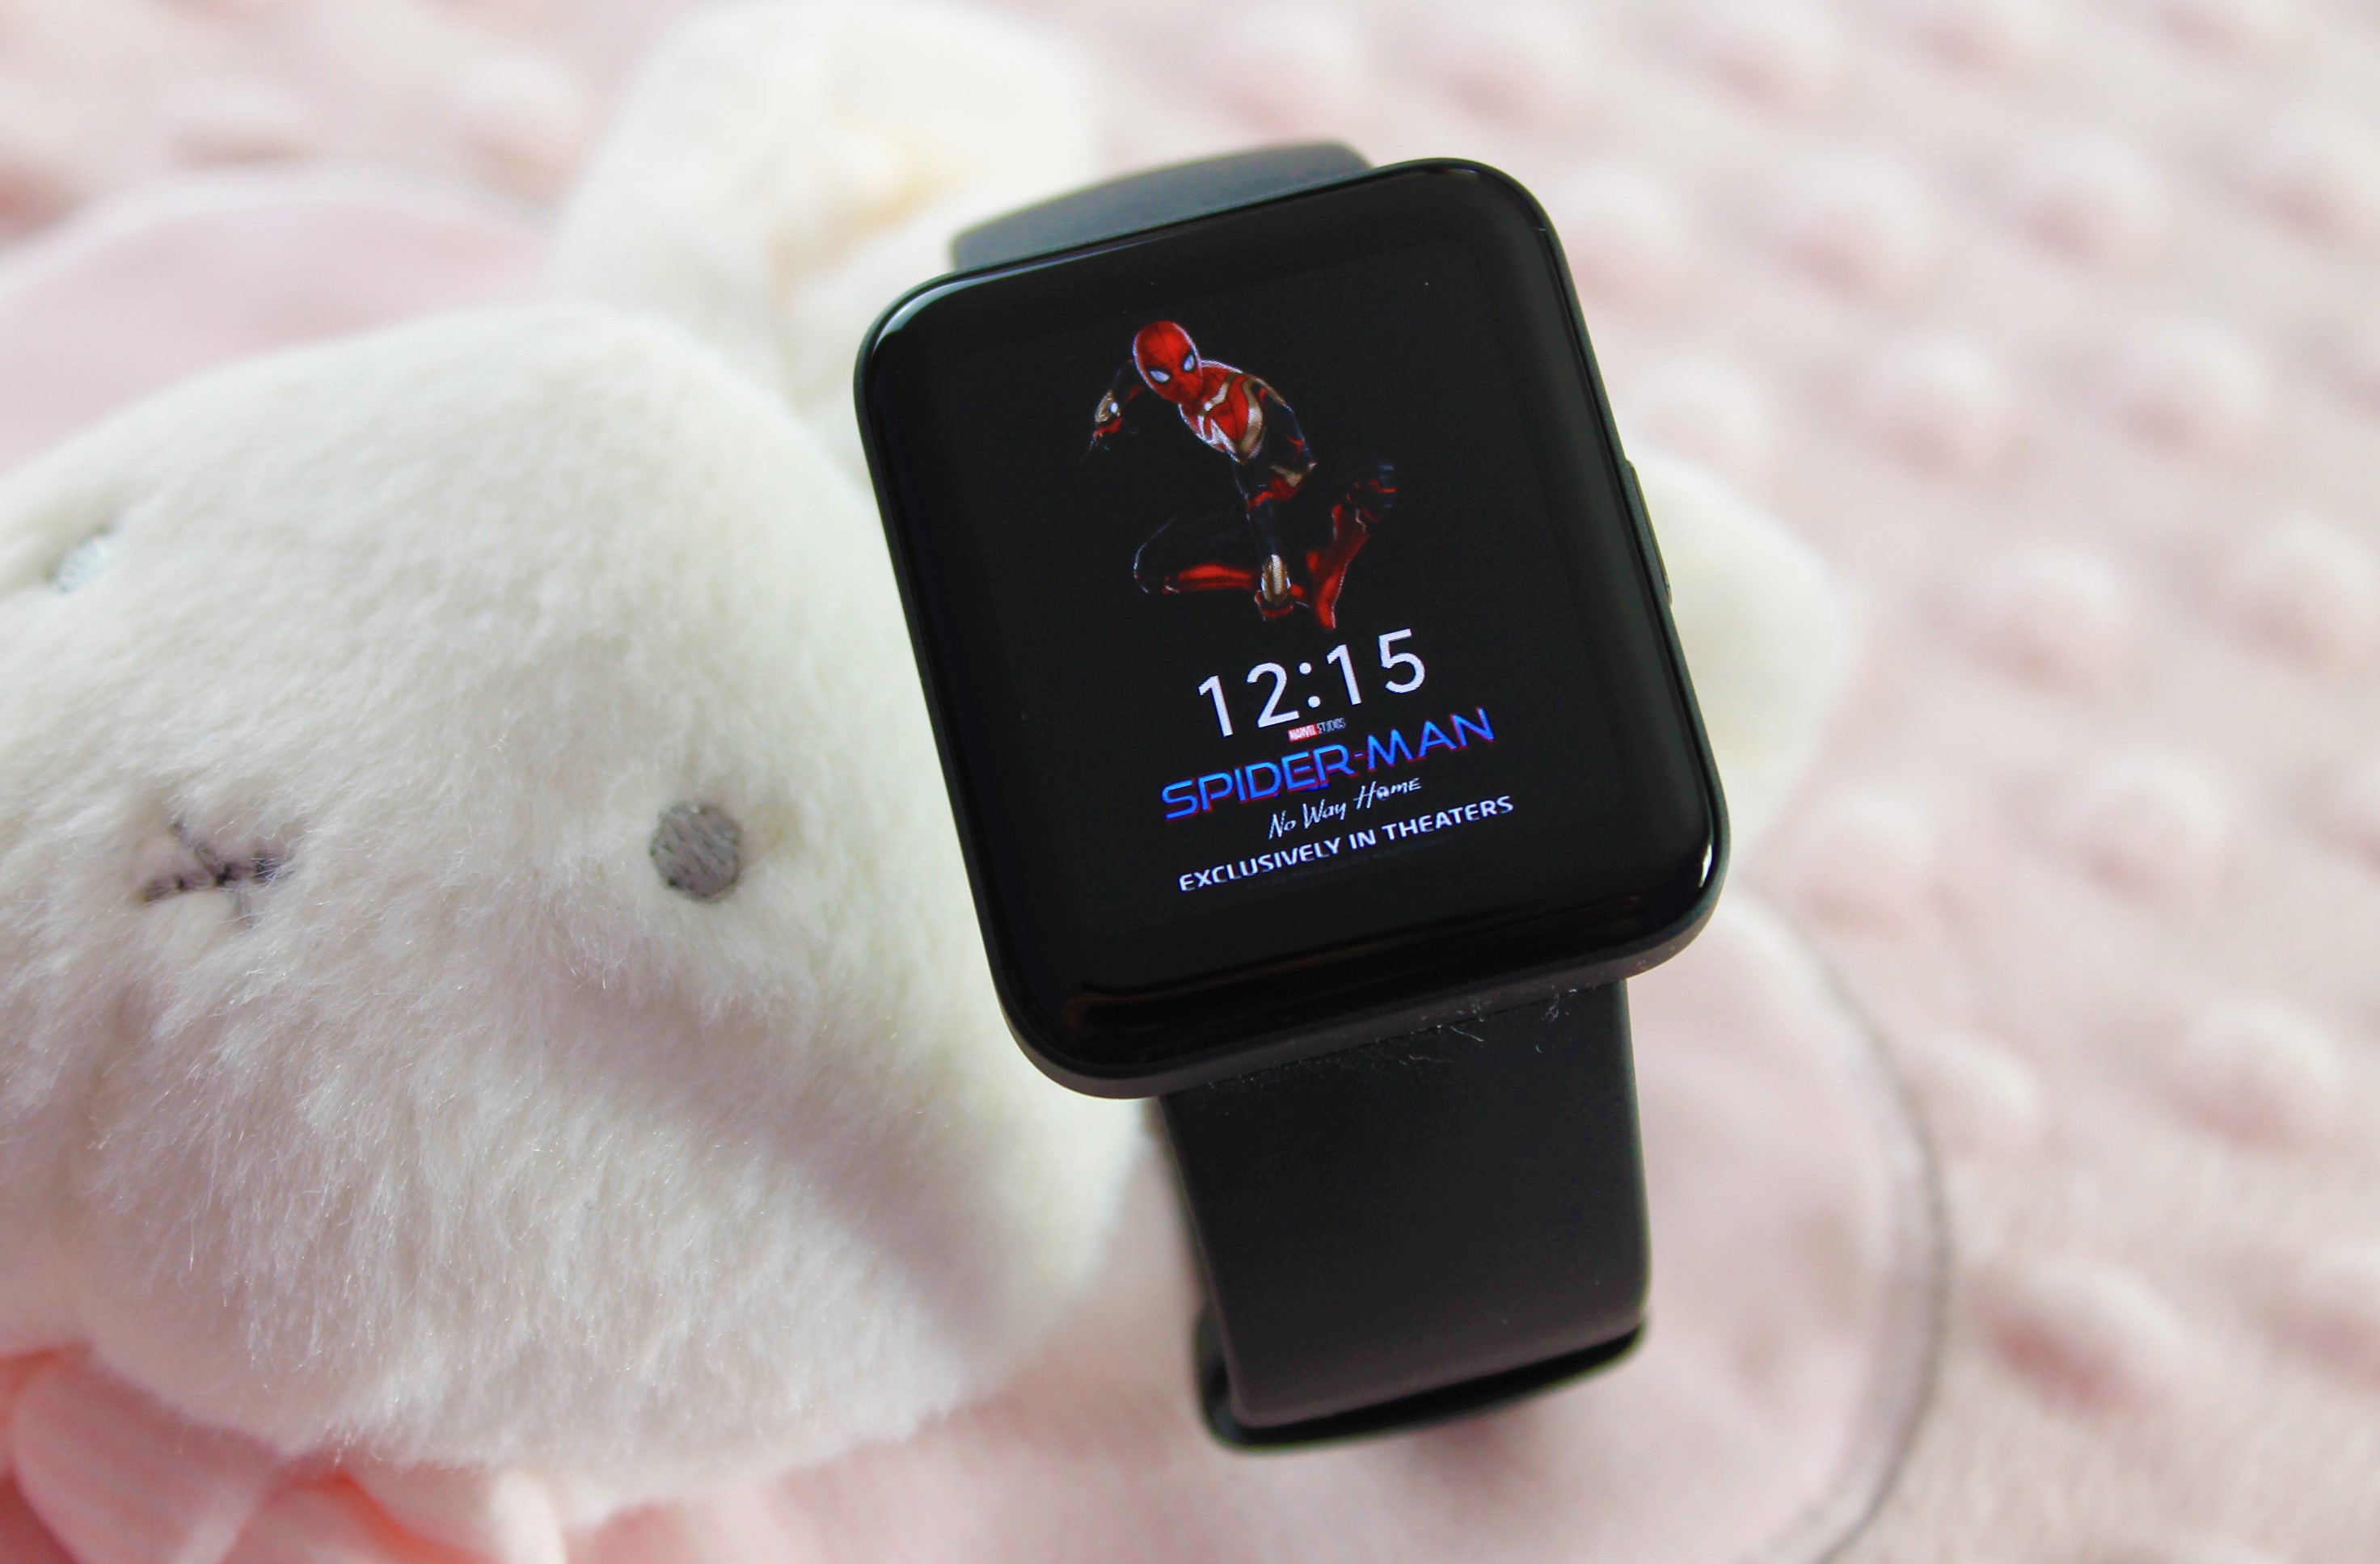 Xiaomi Redmi Watch 2 Lite análisis, review con características y opinión